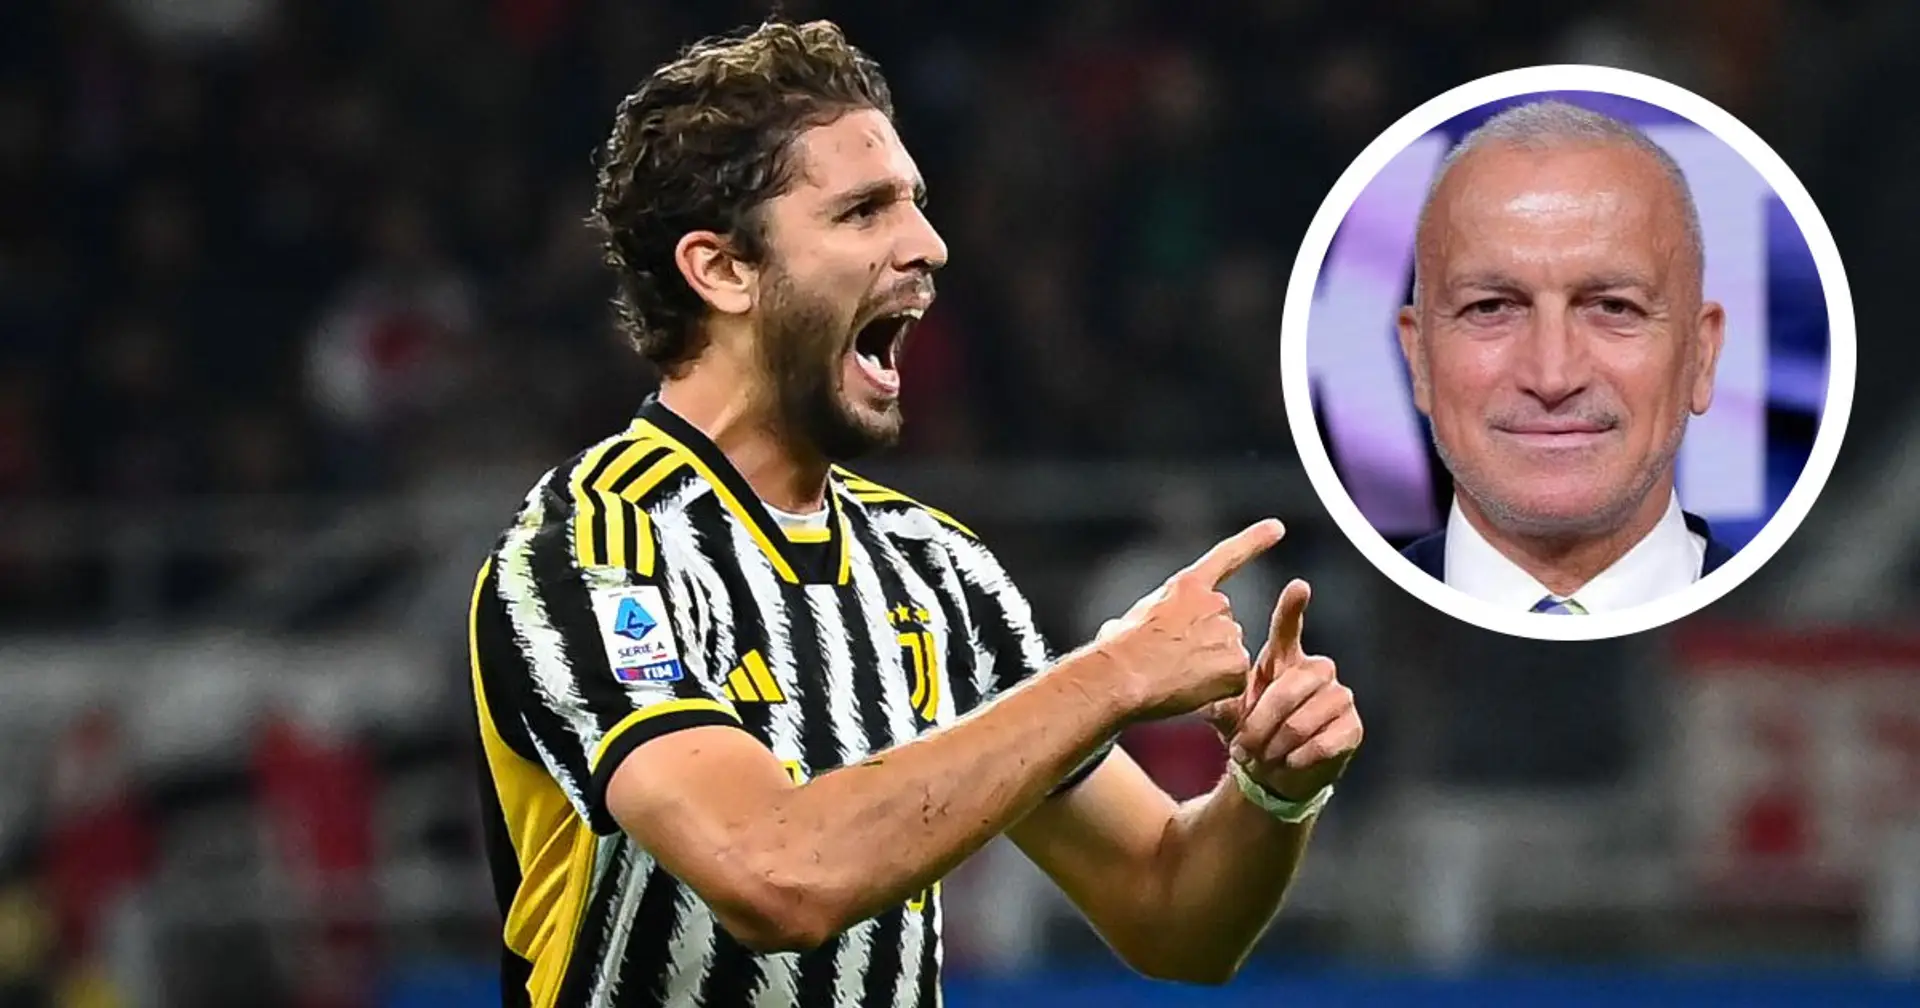 L'ex Torino attacca la Juventus, poi ricorda il vecchio centrocampo: "Non ci sono calciatori forti, ora ha Locatelli"